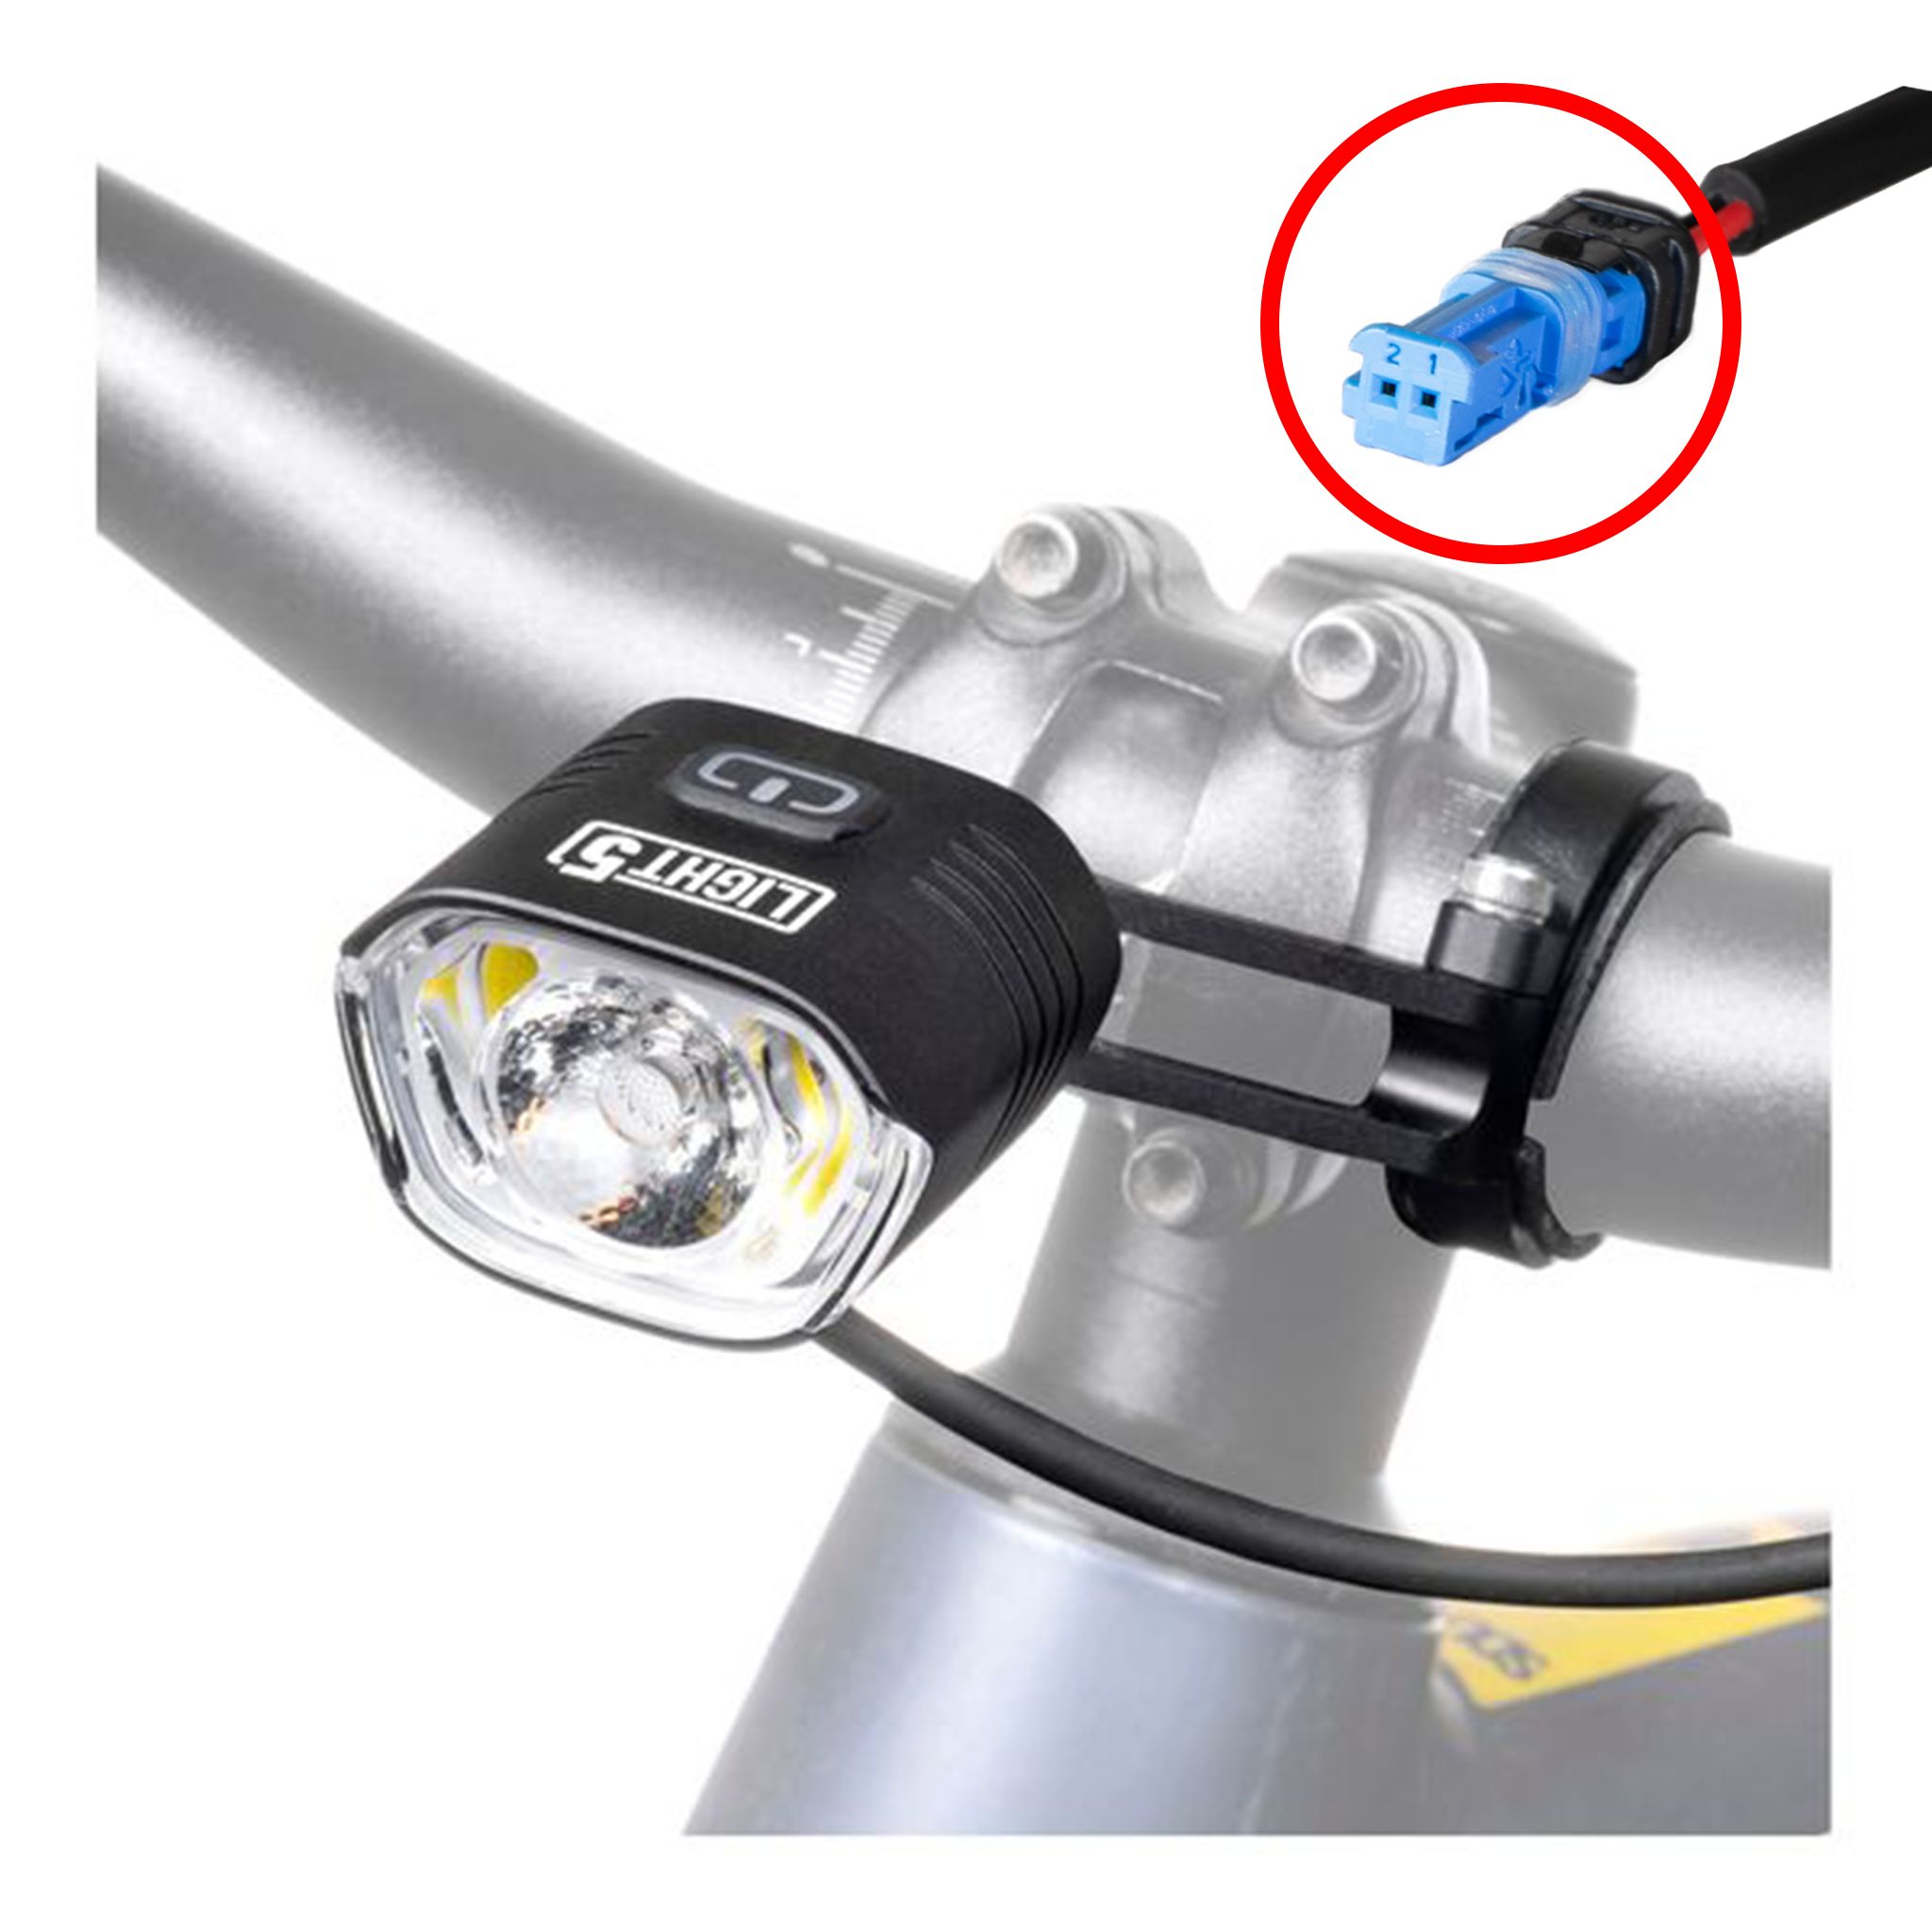 Cykellampa för elcykel Light5 EB1000, Bosch, 1000 lm, Endast framlampa